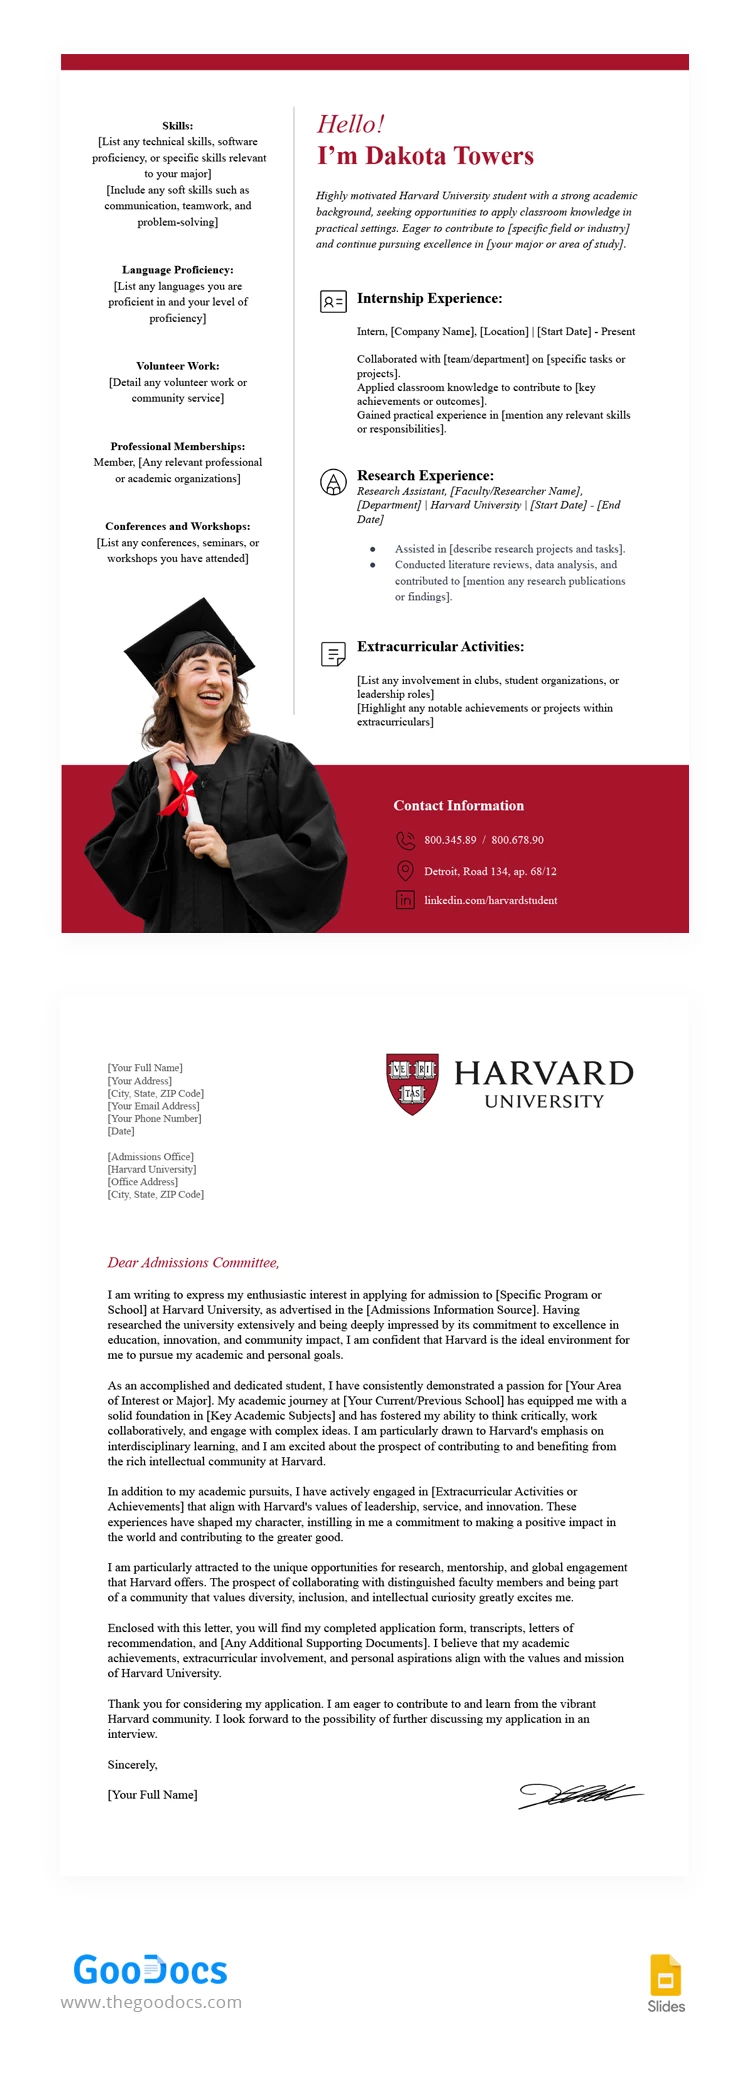 Harvard Lebenslauf und Anschreiben - free Google Docs Template - 10068108